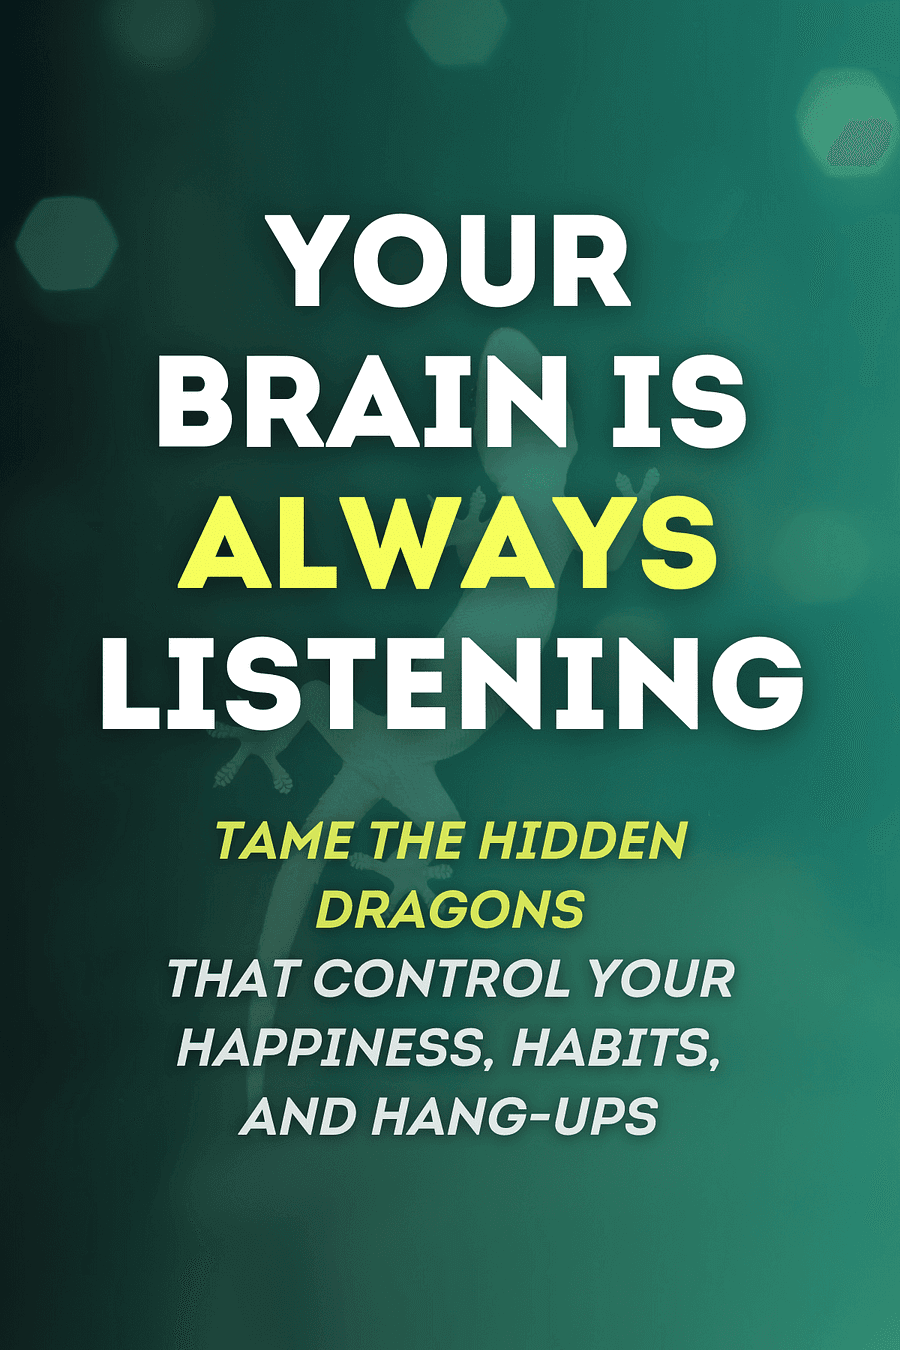 Your Brain Is Always Listening by Daniel G. Amen - Book Summary